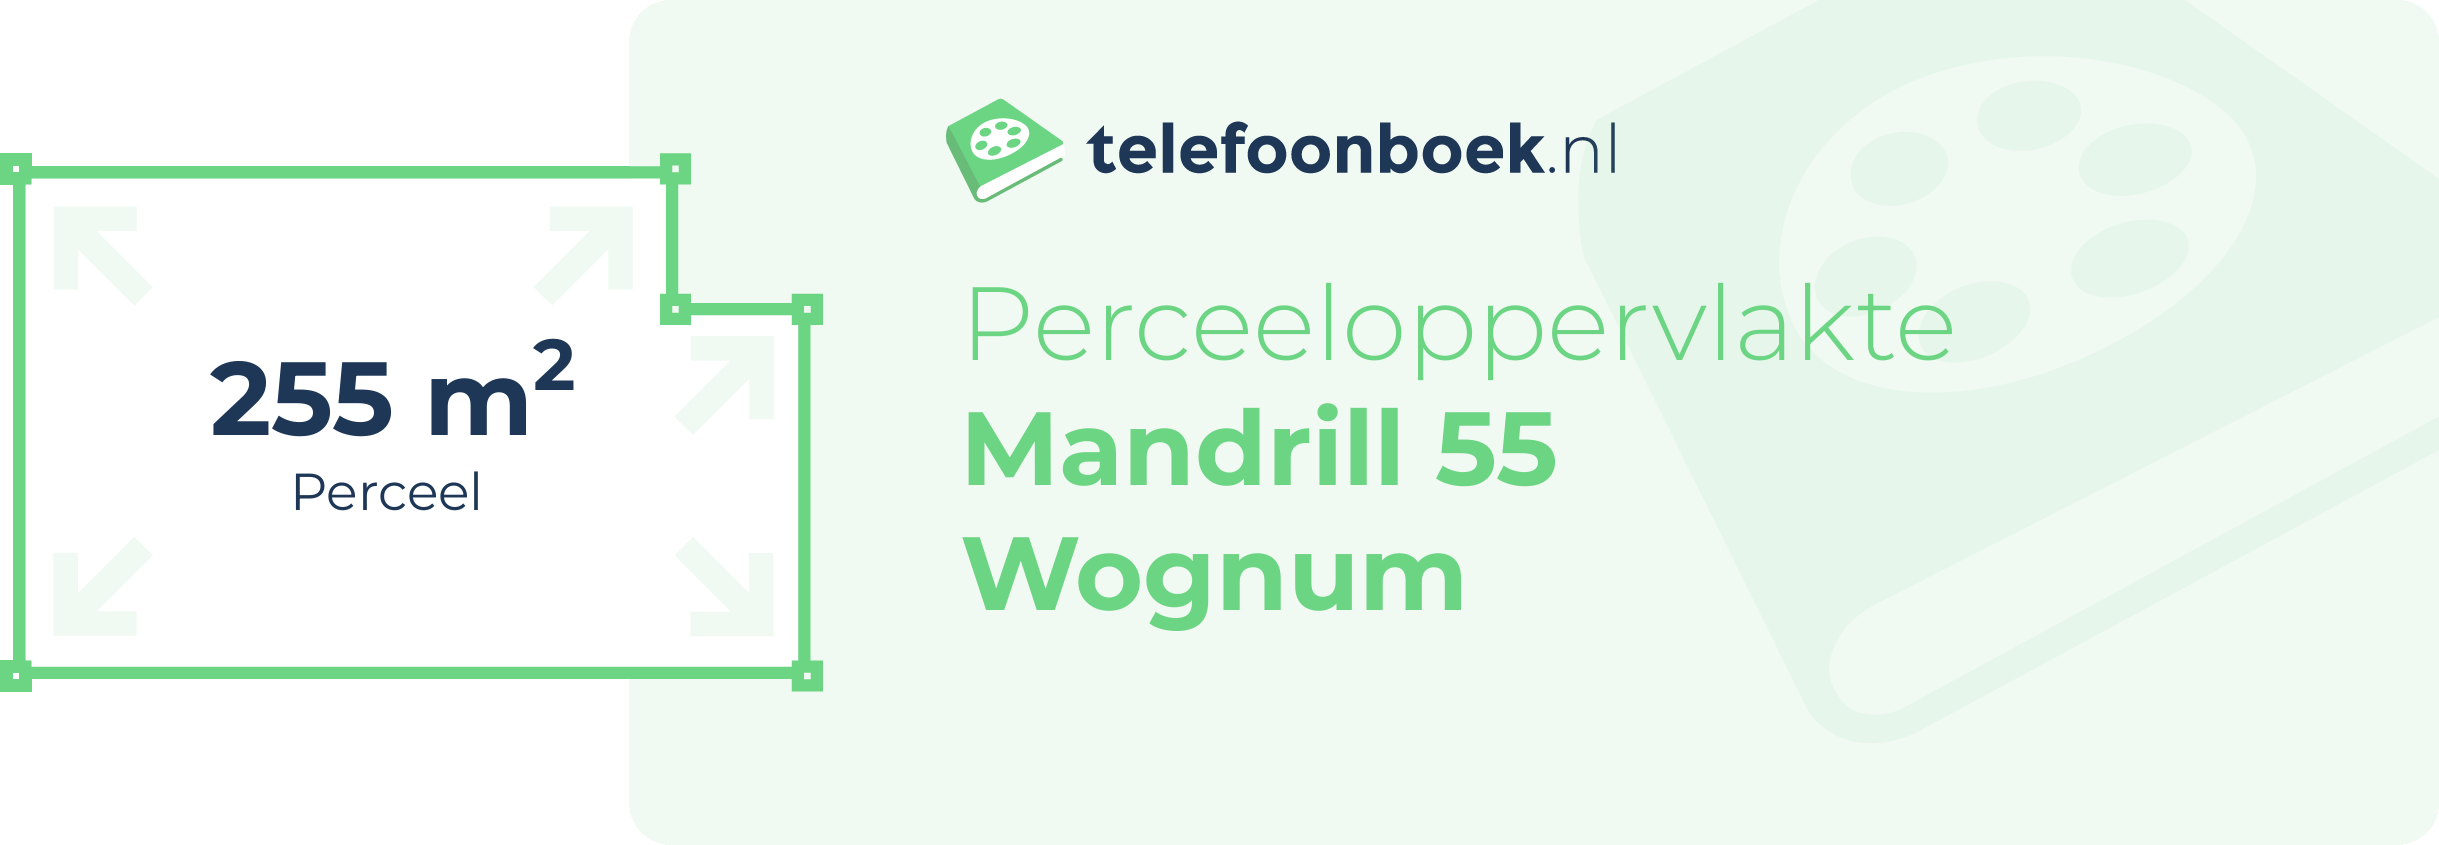 Perceeloppervlakte Mandrill 55 Wognum